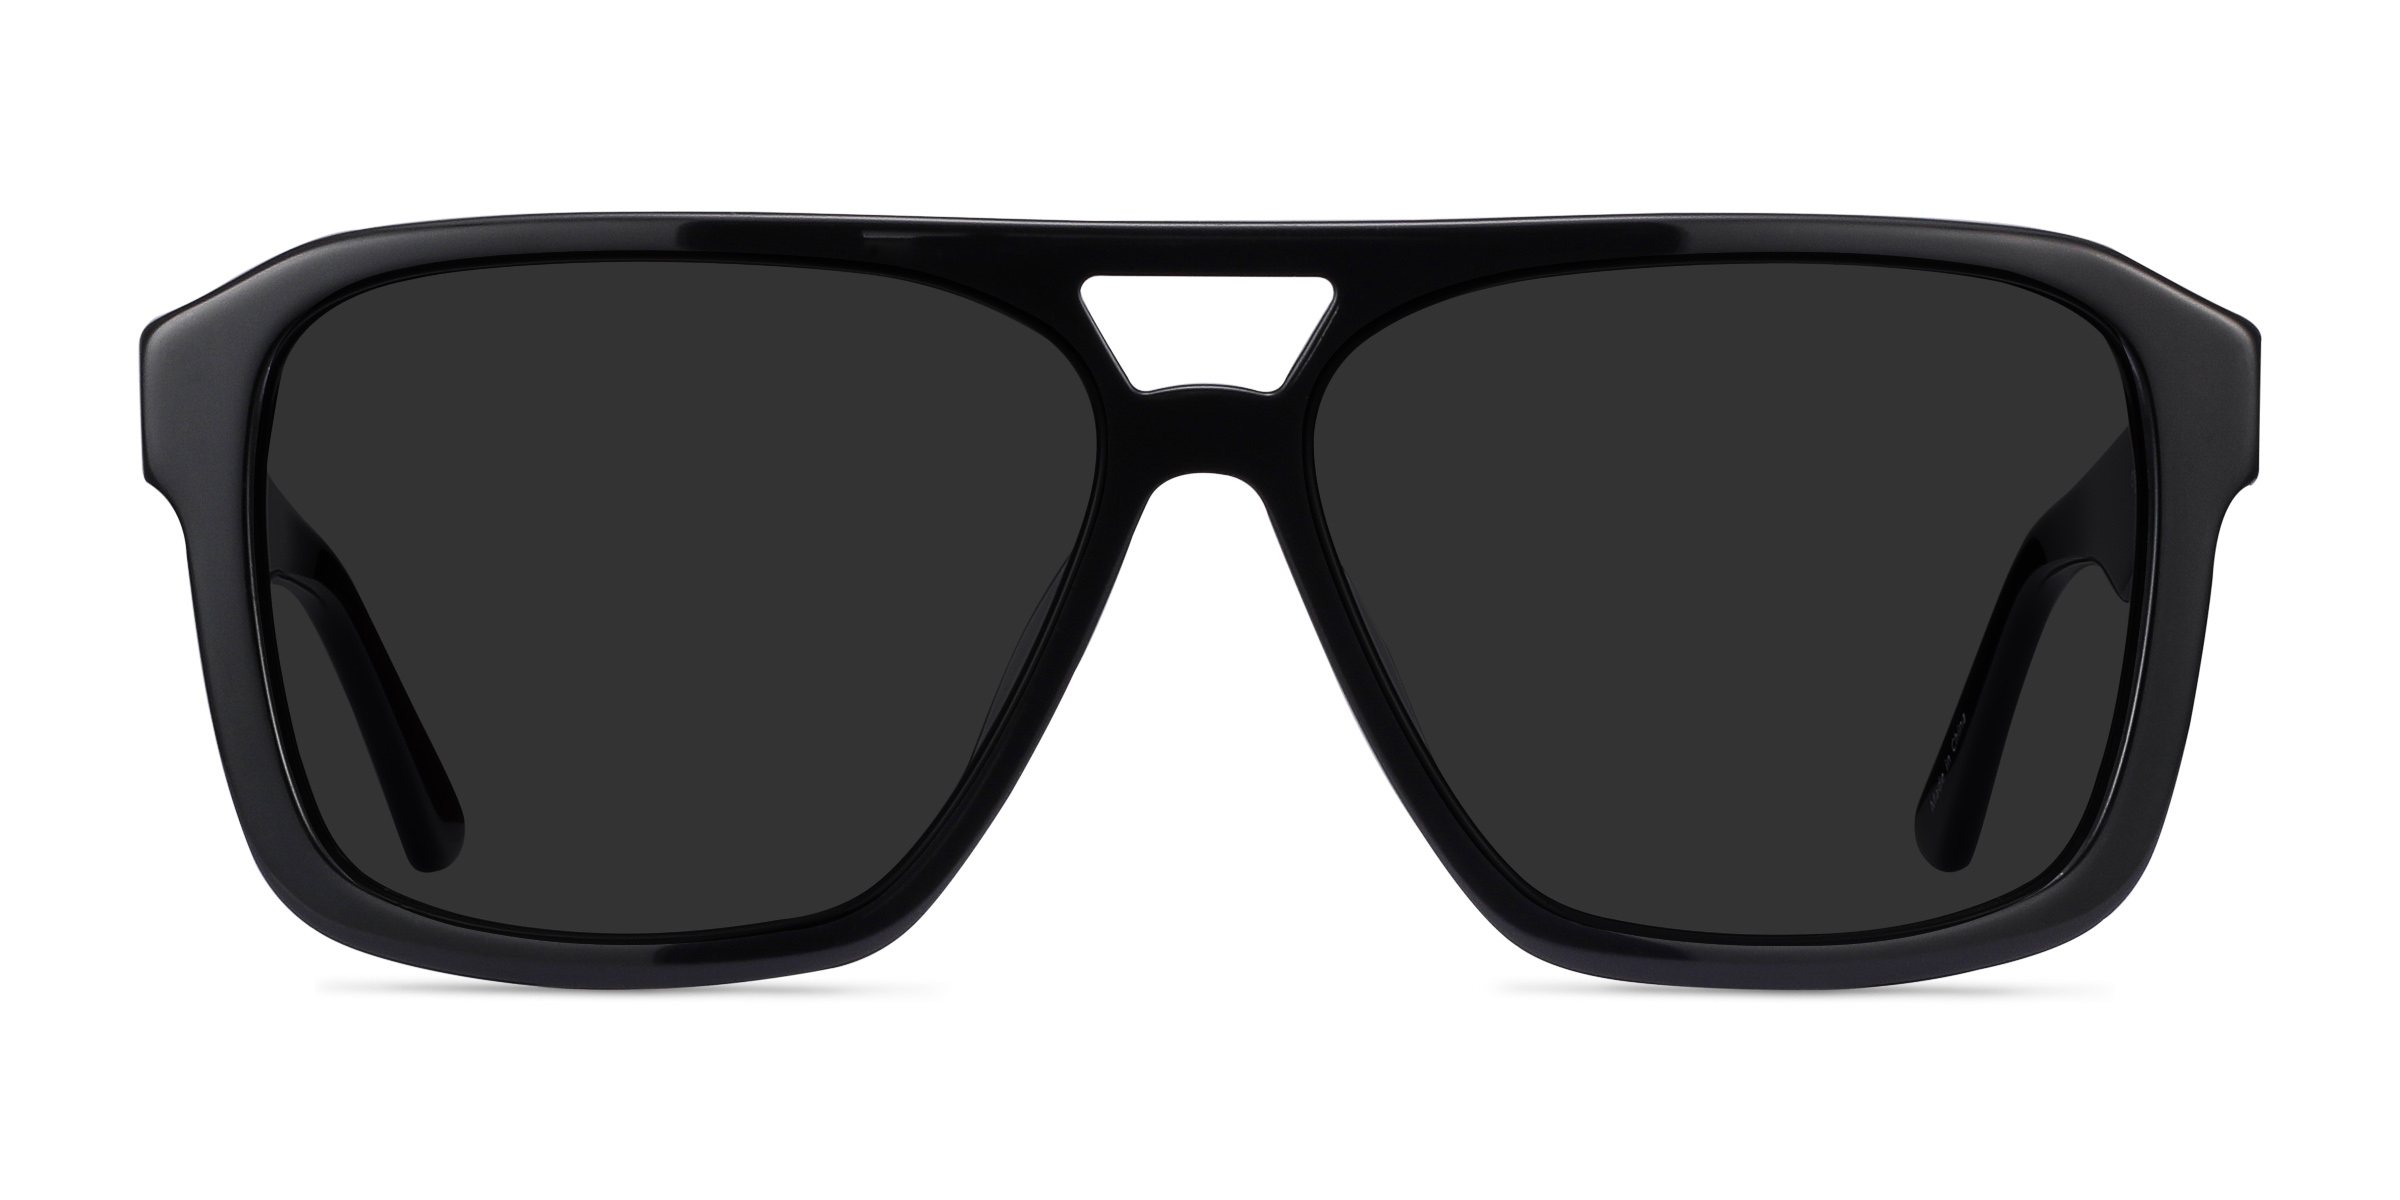 Bauhaus - Aviator Black Frame Sunglasses For Men | Eyebuydirect